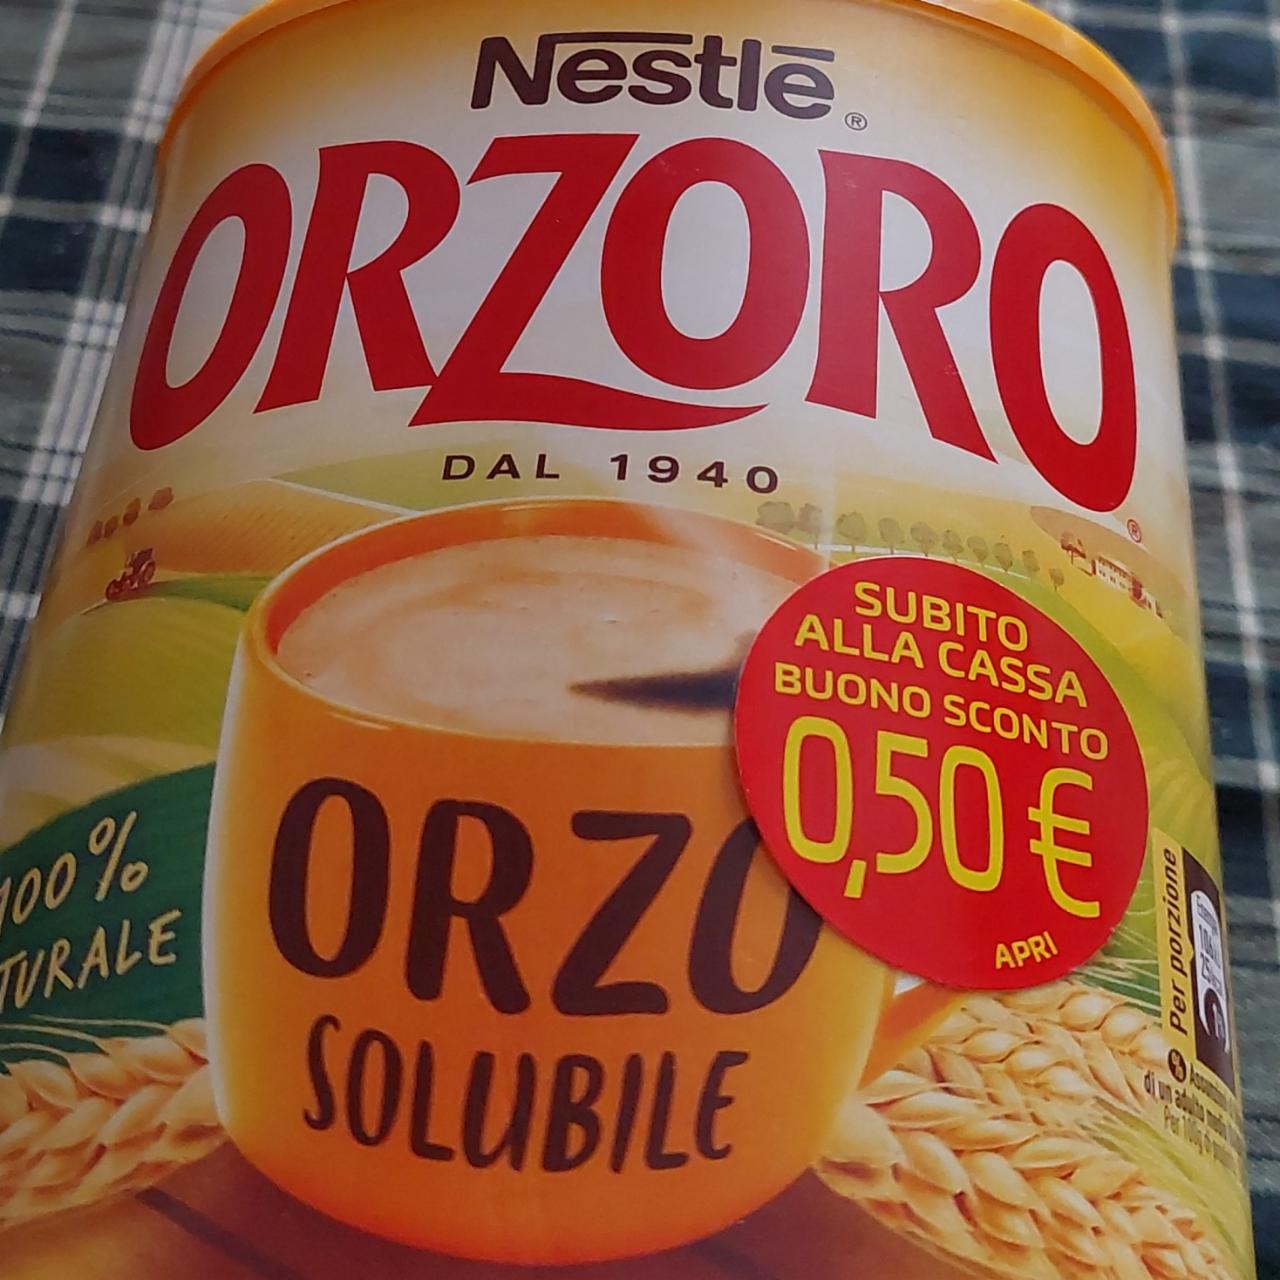 Фото - Orzoro Solubile Nestlé